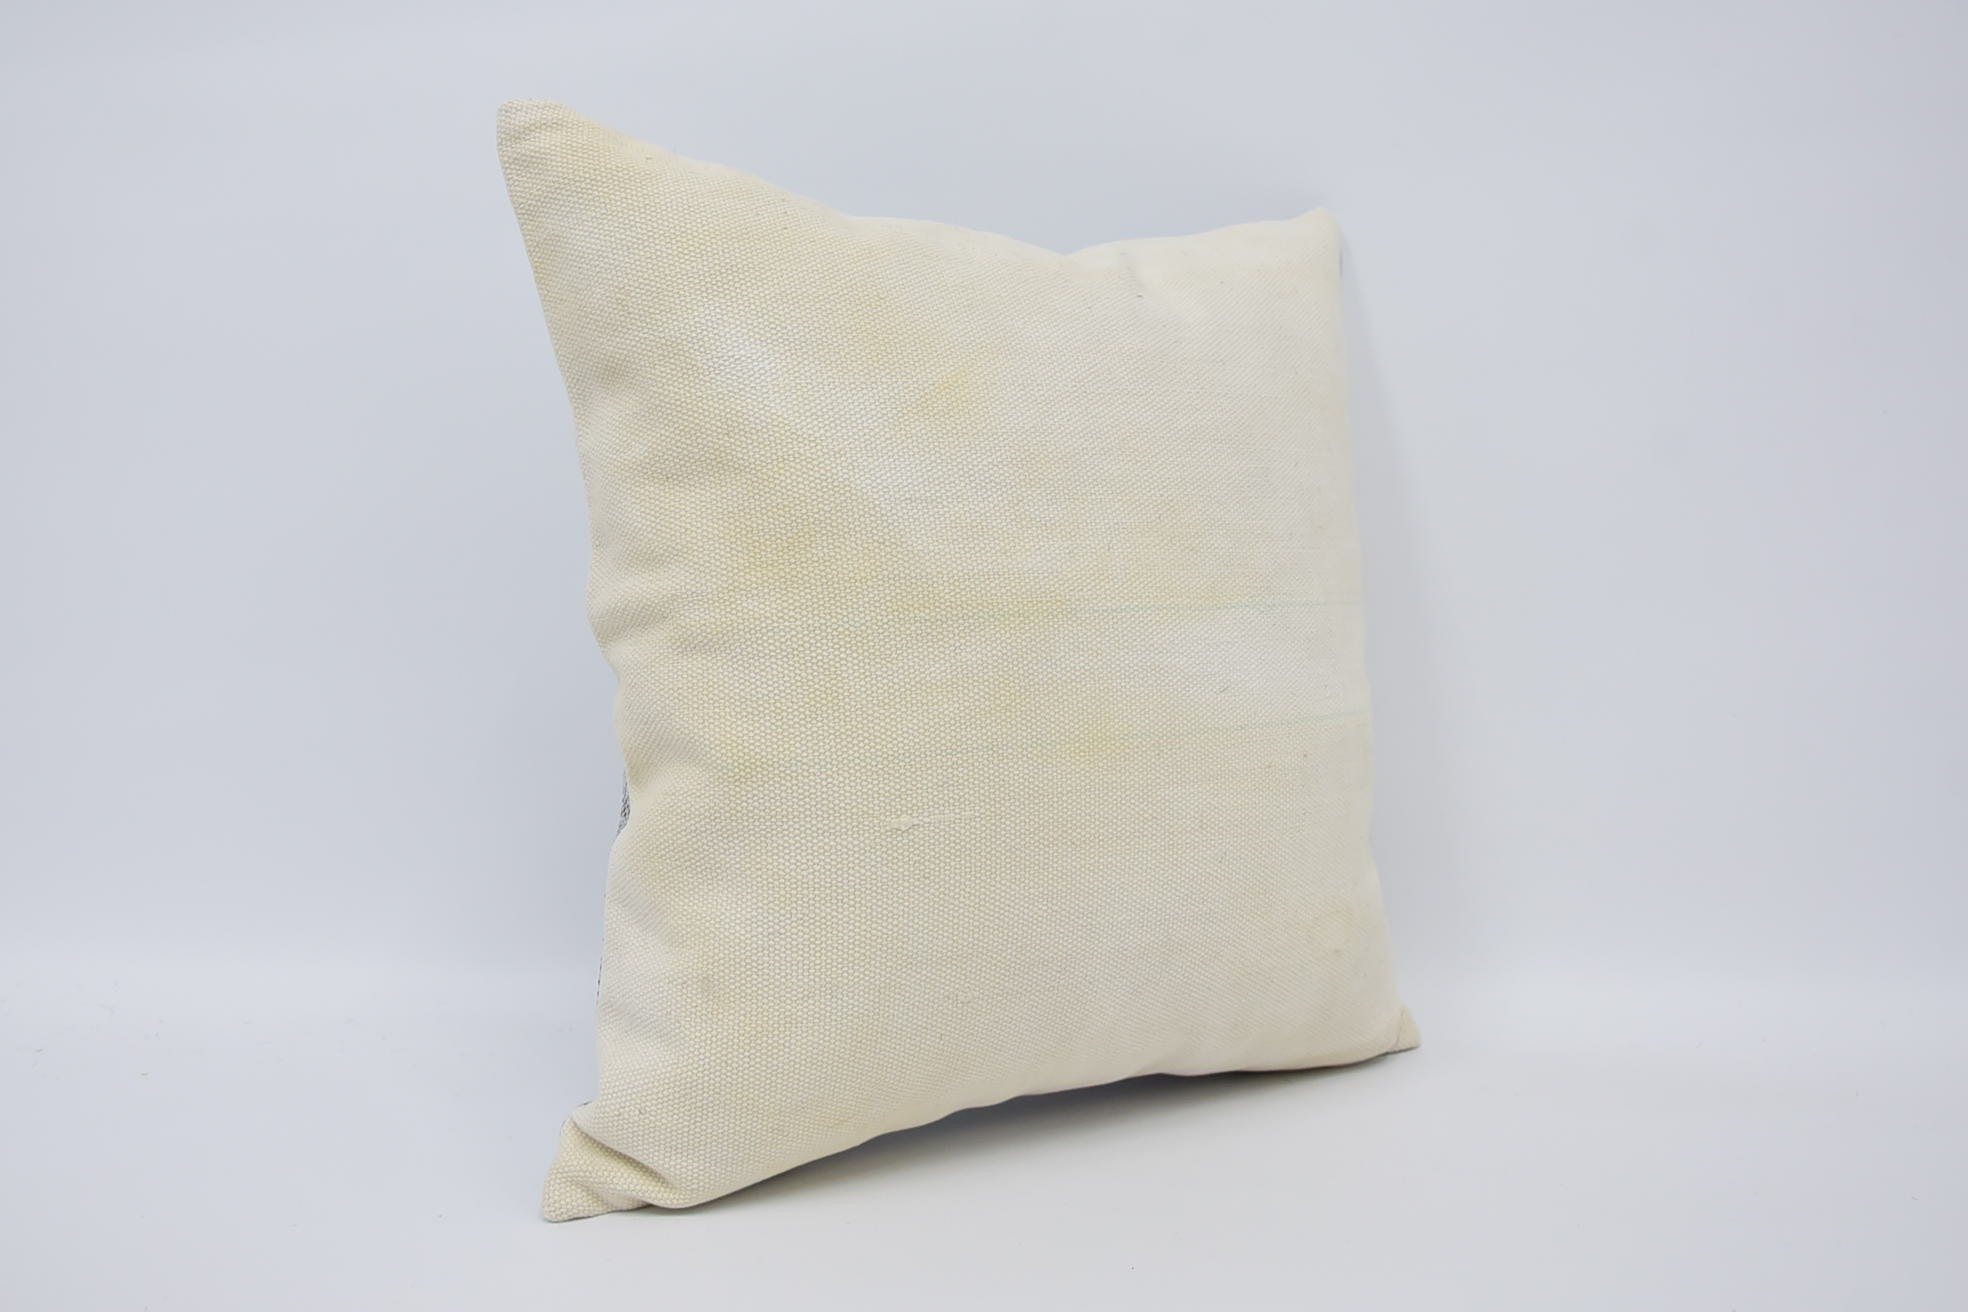 Ethnic Pillow Case, Vintage Kilim Pillow, 18"x18" Beige Pillow Sham, Vintage Cushion Cover, Vintage Pillow, Boho Pillow